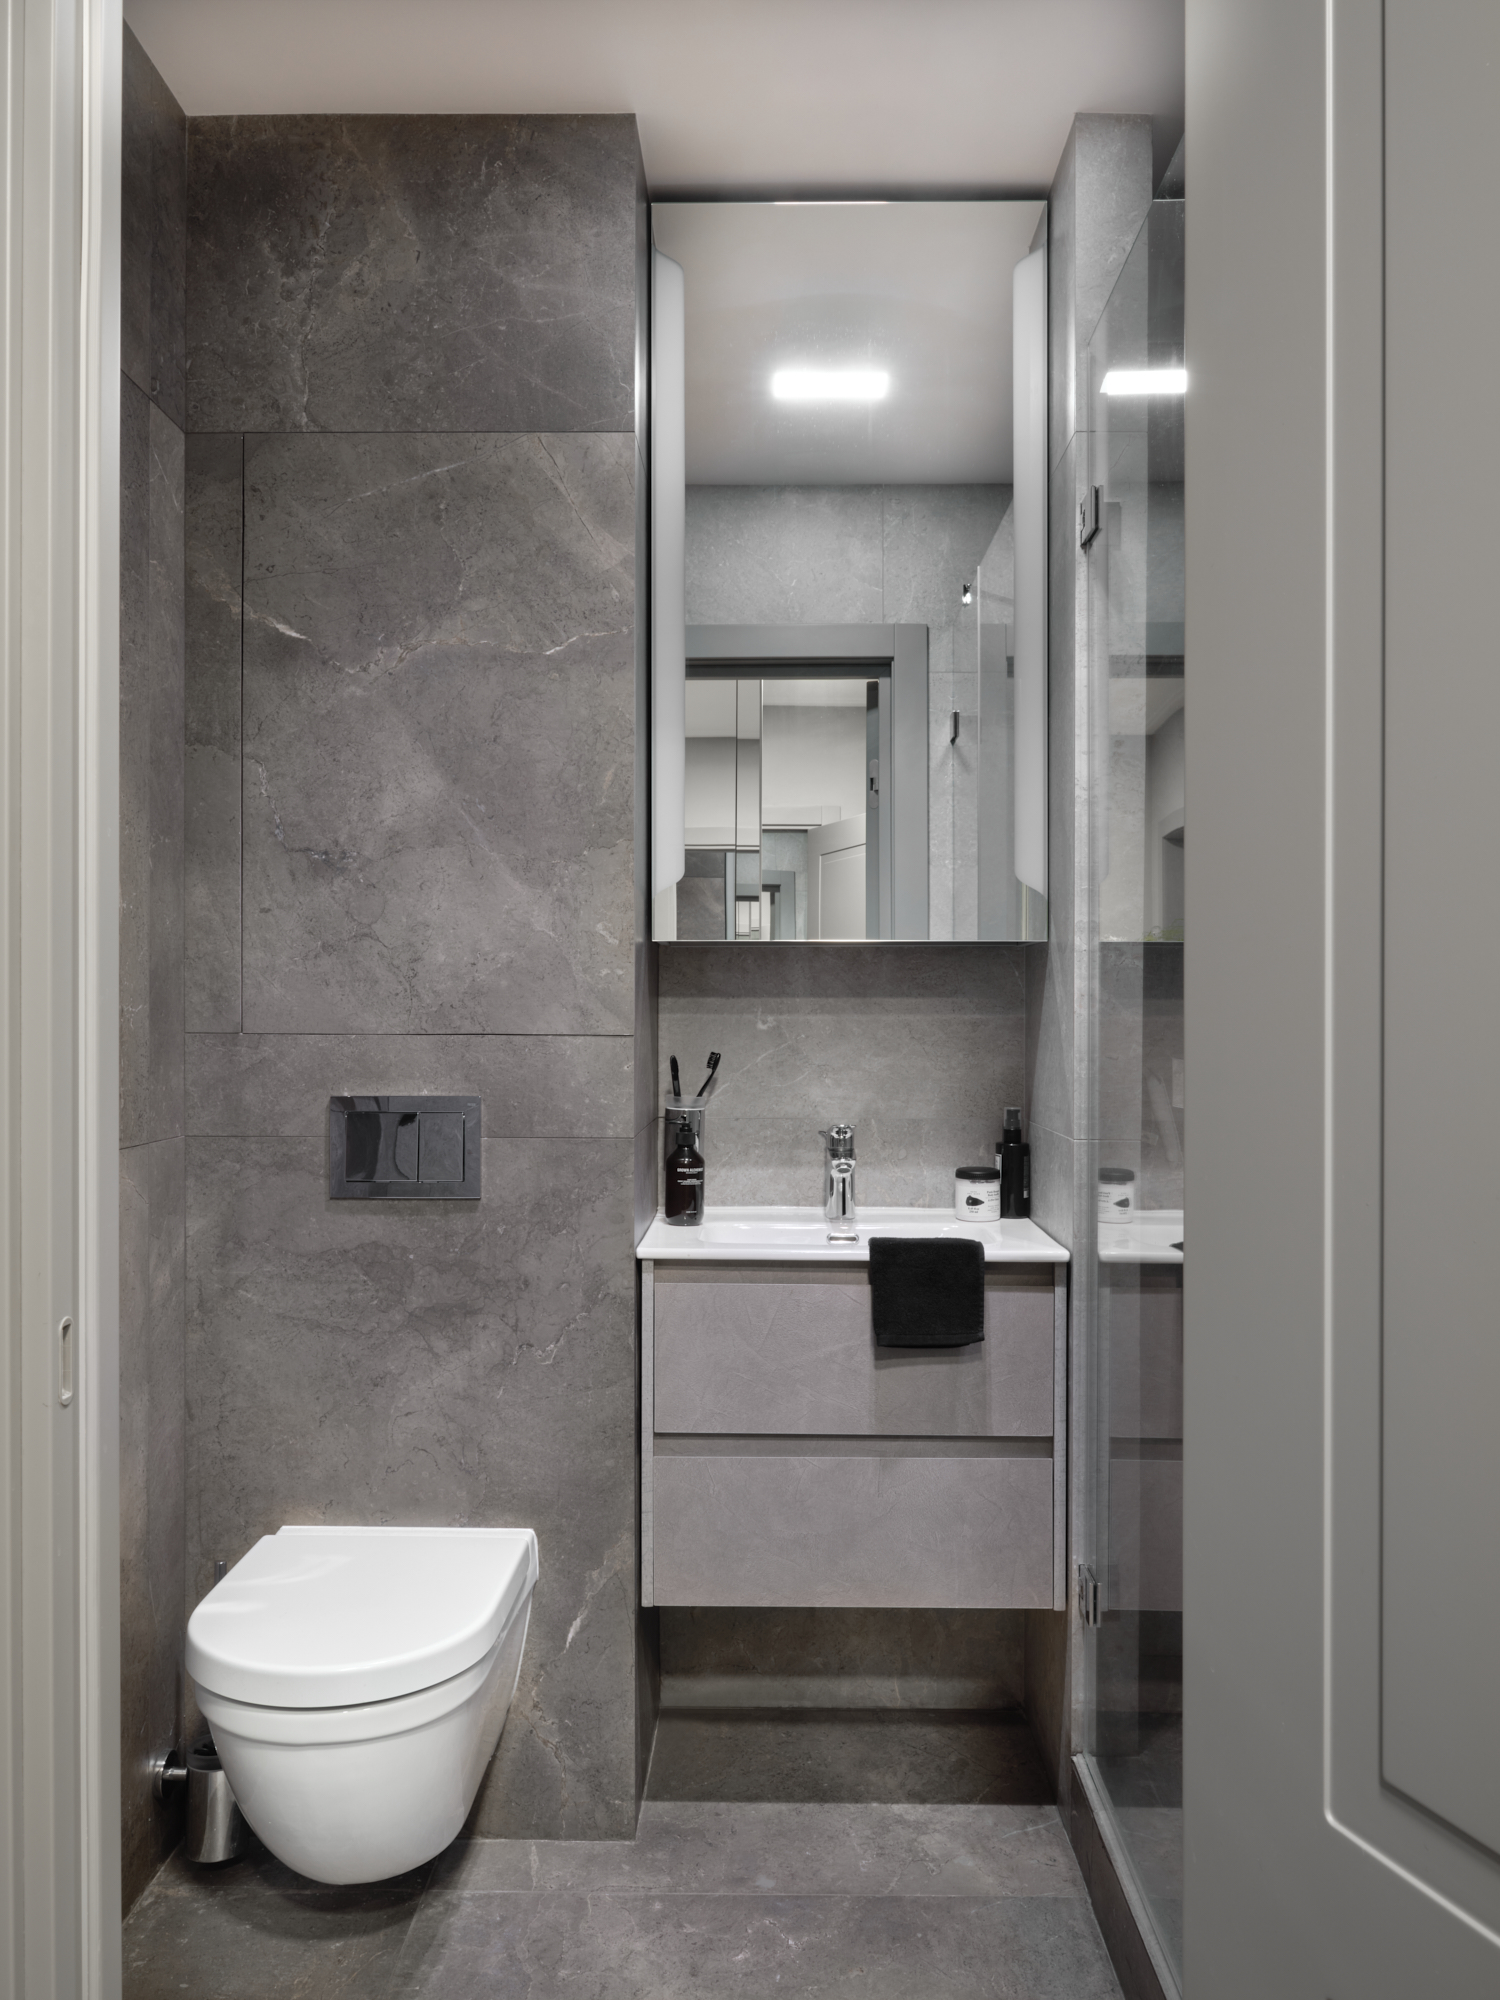 Bồn toilet và tủ vanity gắn tường cũng giúp giải phóng diện tích sàn. Nội thất phòng tắm được lựa chọn là loại vật liệu đá và sứ thế hệ mới của Đức.